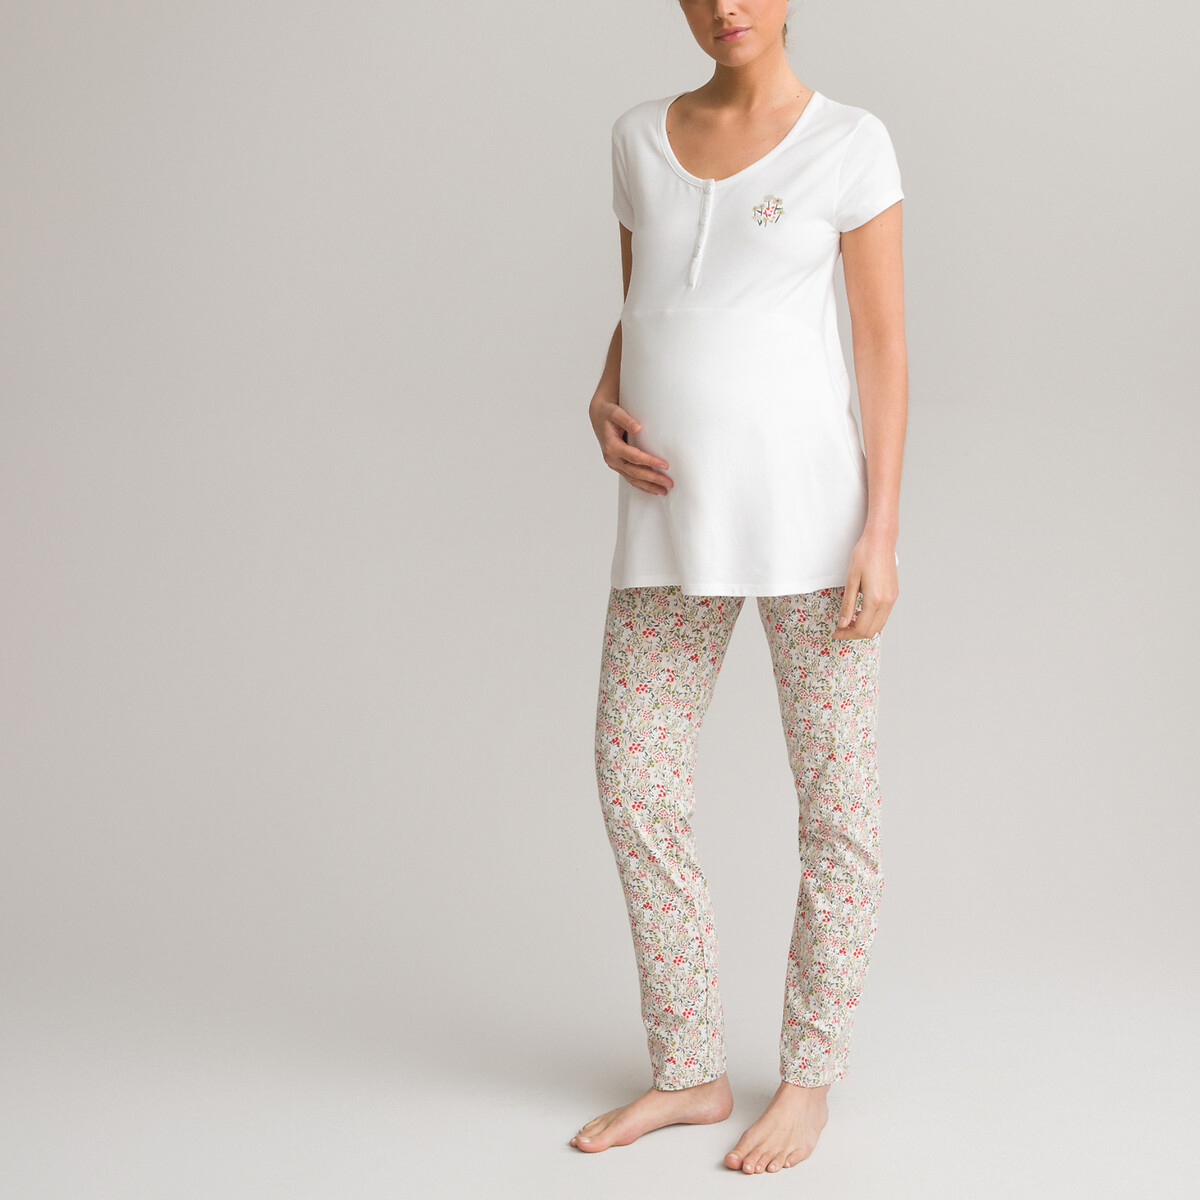 Пижама LA REDOUTE COLLECTIONS Для периода беременности с короткими рукавами из джерси 34/36 (FR) - 40/42 (RUS) разноцветный, размер 34/36 (FR) - 40/42 (RUS)